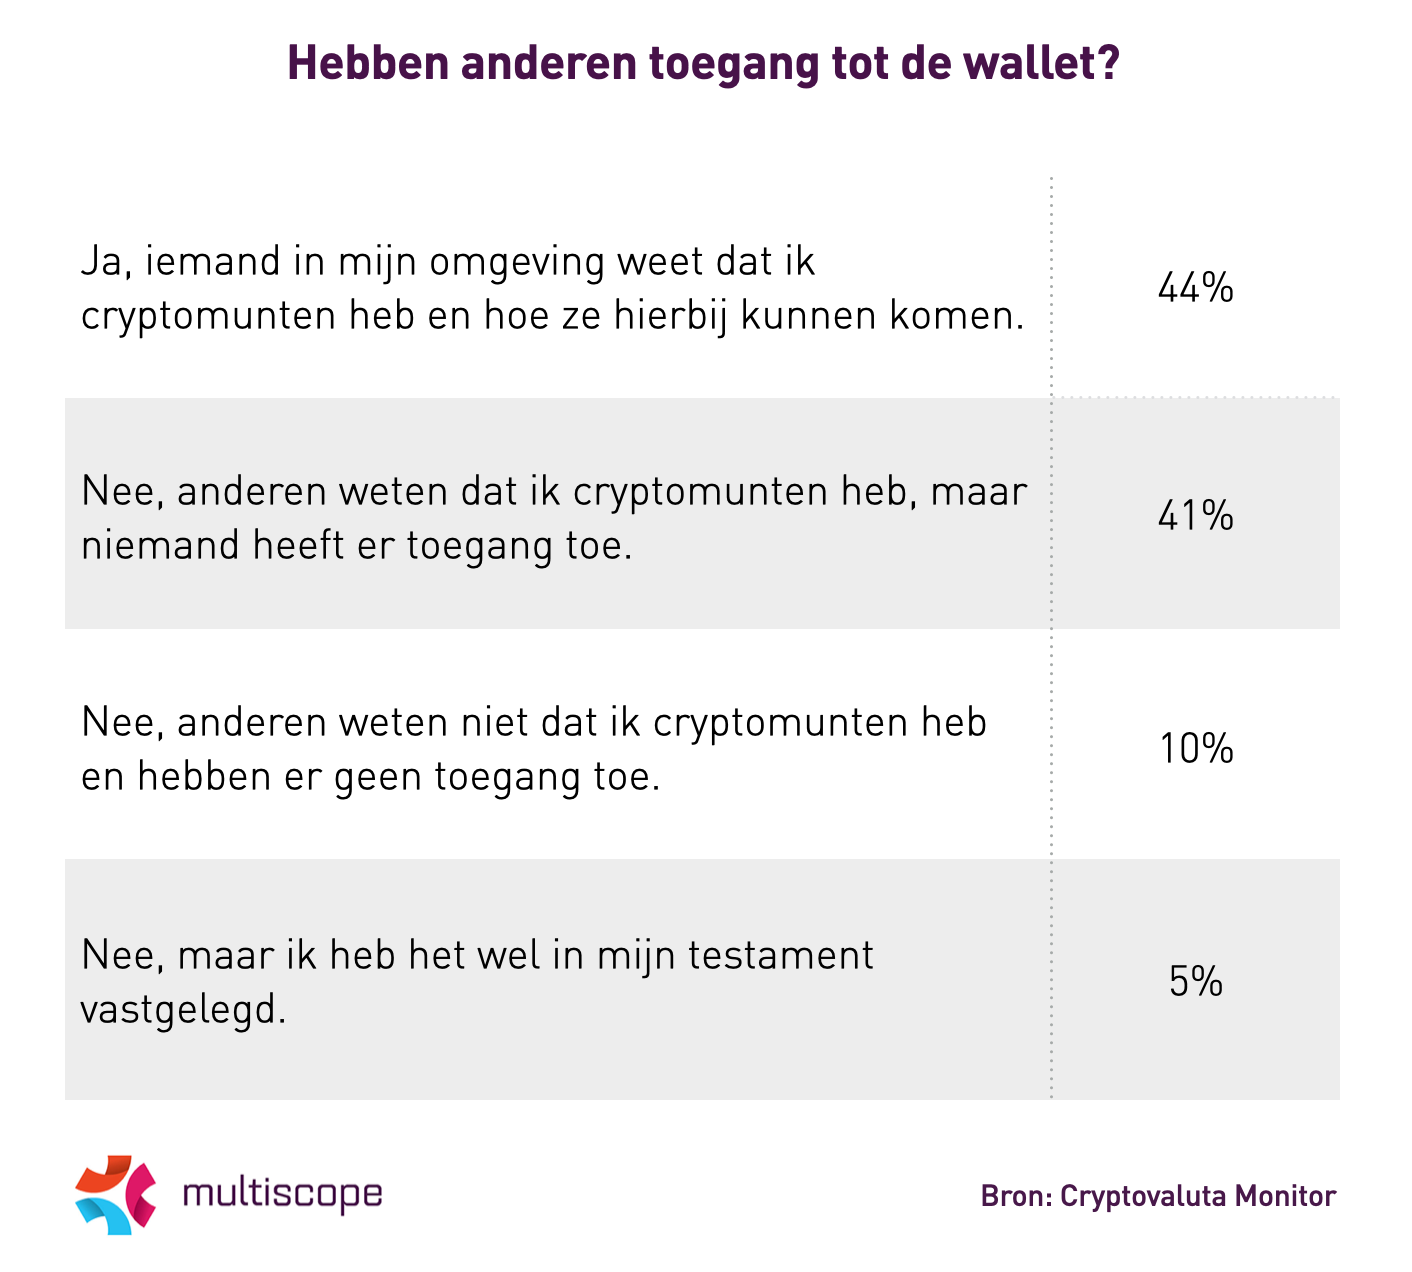 60% van Nederlanders heeft alle cryptovaluta in één wallet